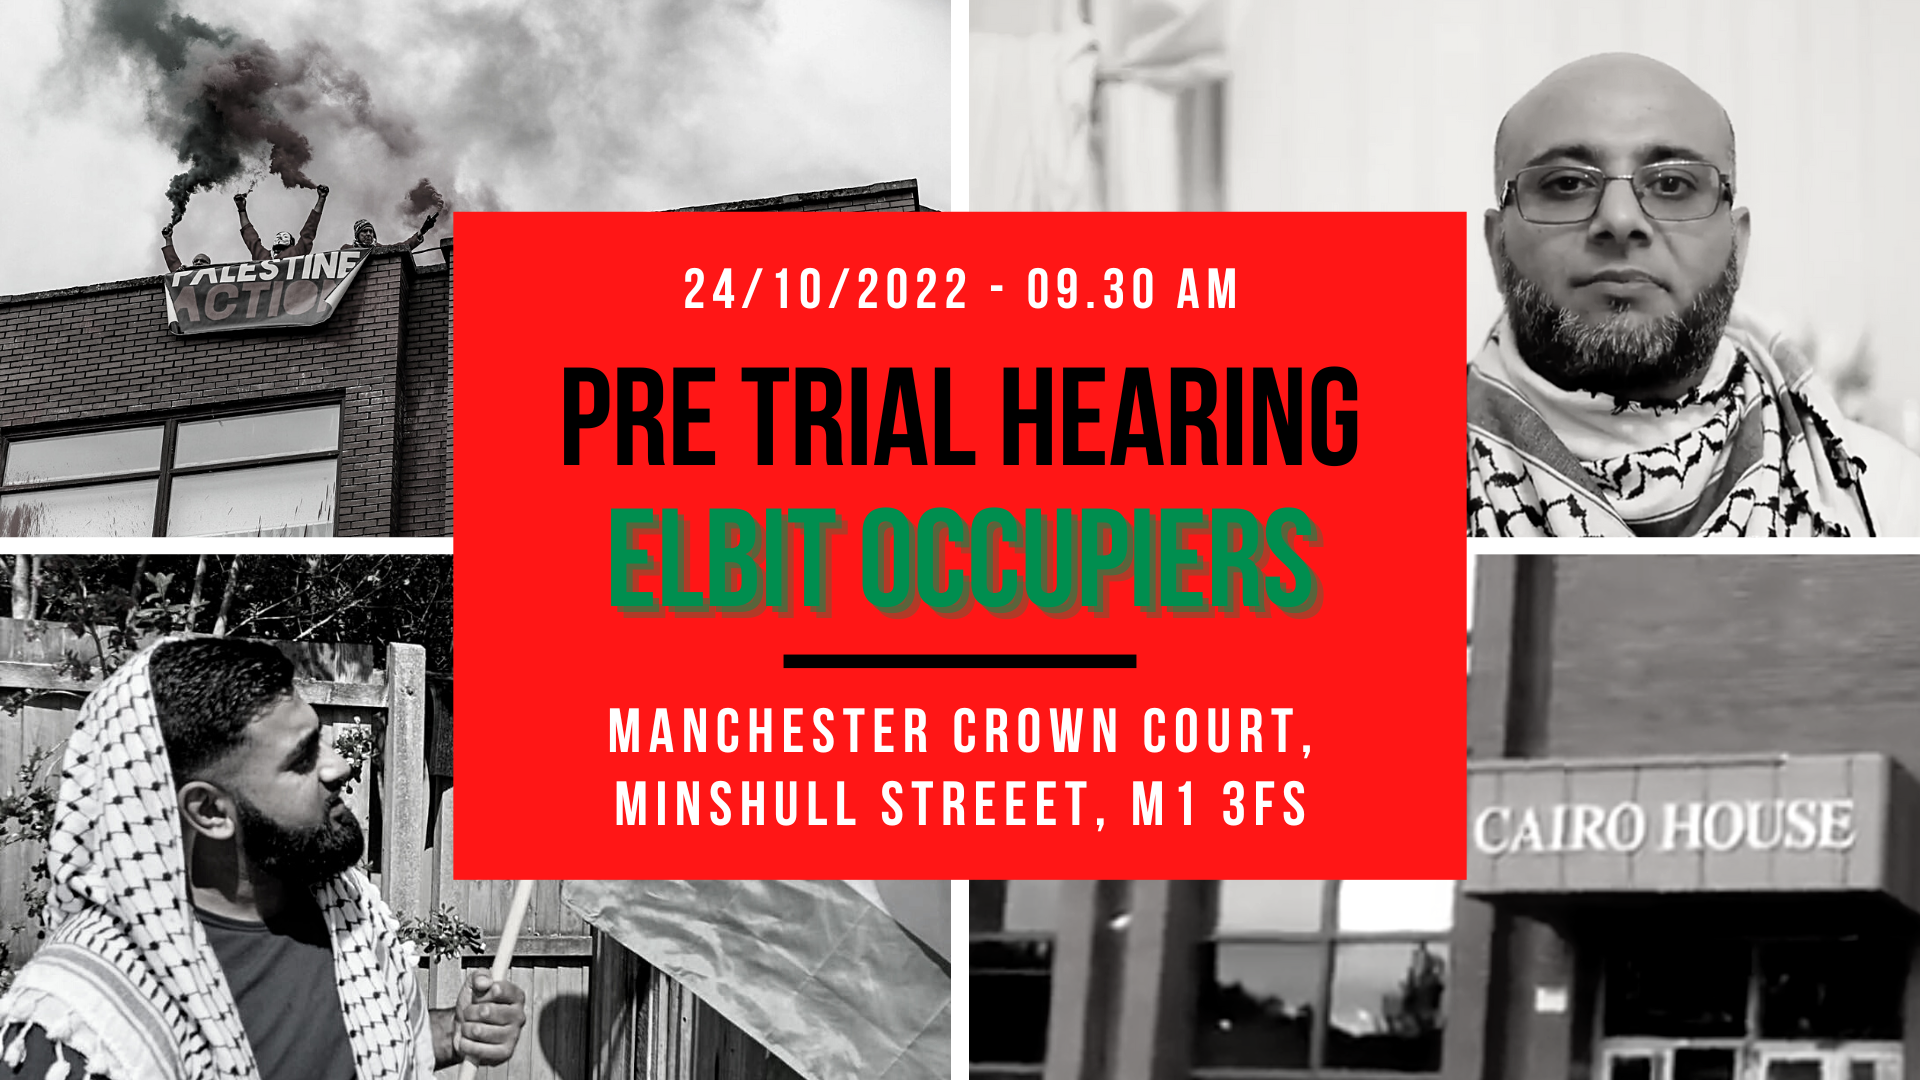 Pre Trial Hearing - Elbit Occupiers